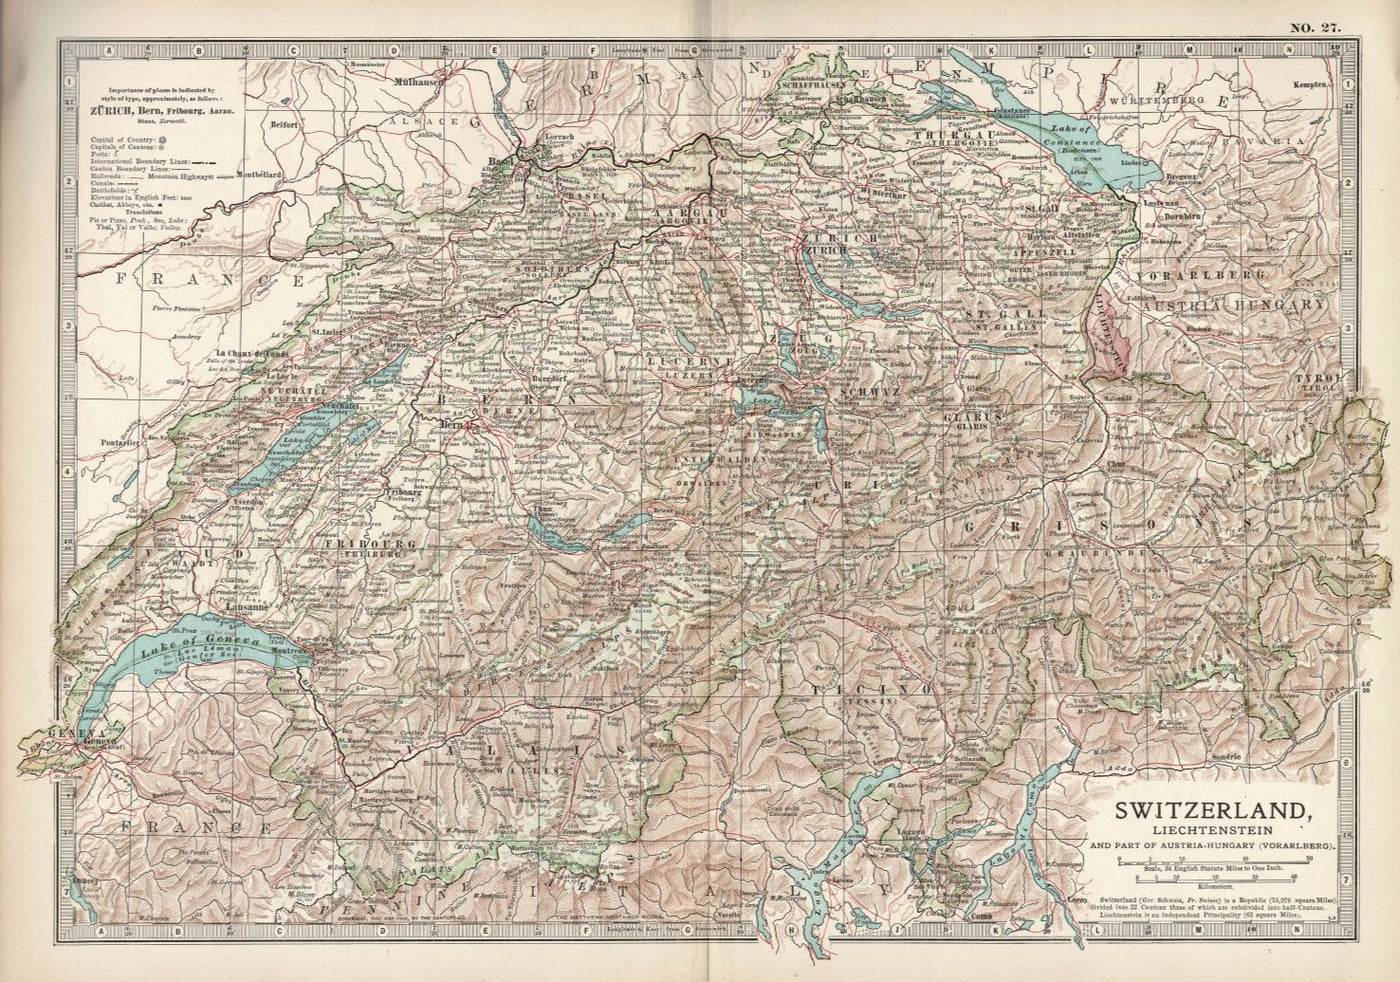 Switzerland & Liechtenstein antique map from Encyclopaedia Britannica 1903